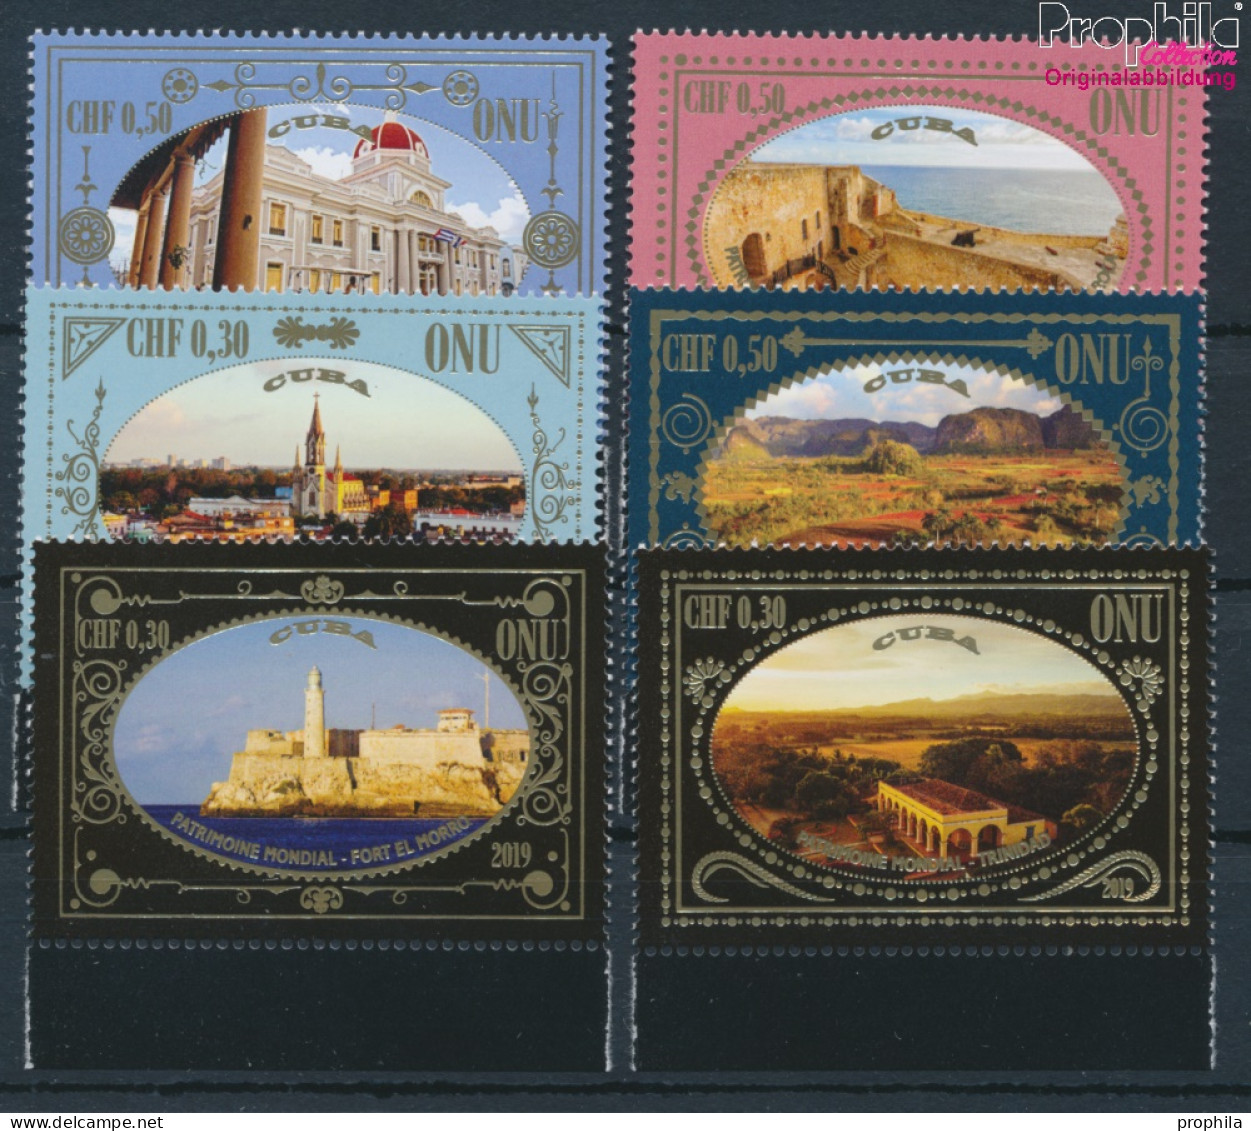 UNO - Genf 1100-1105 (kompl.Ausg.) Postfrisch 2019 UNESCO Welterbe Kuba (10194026 - Unused Stamps